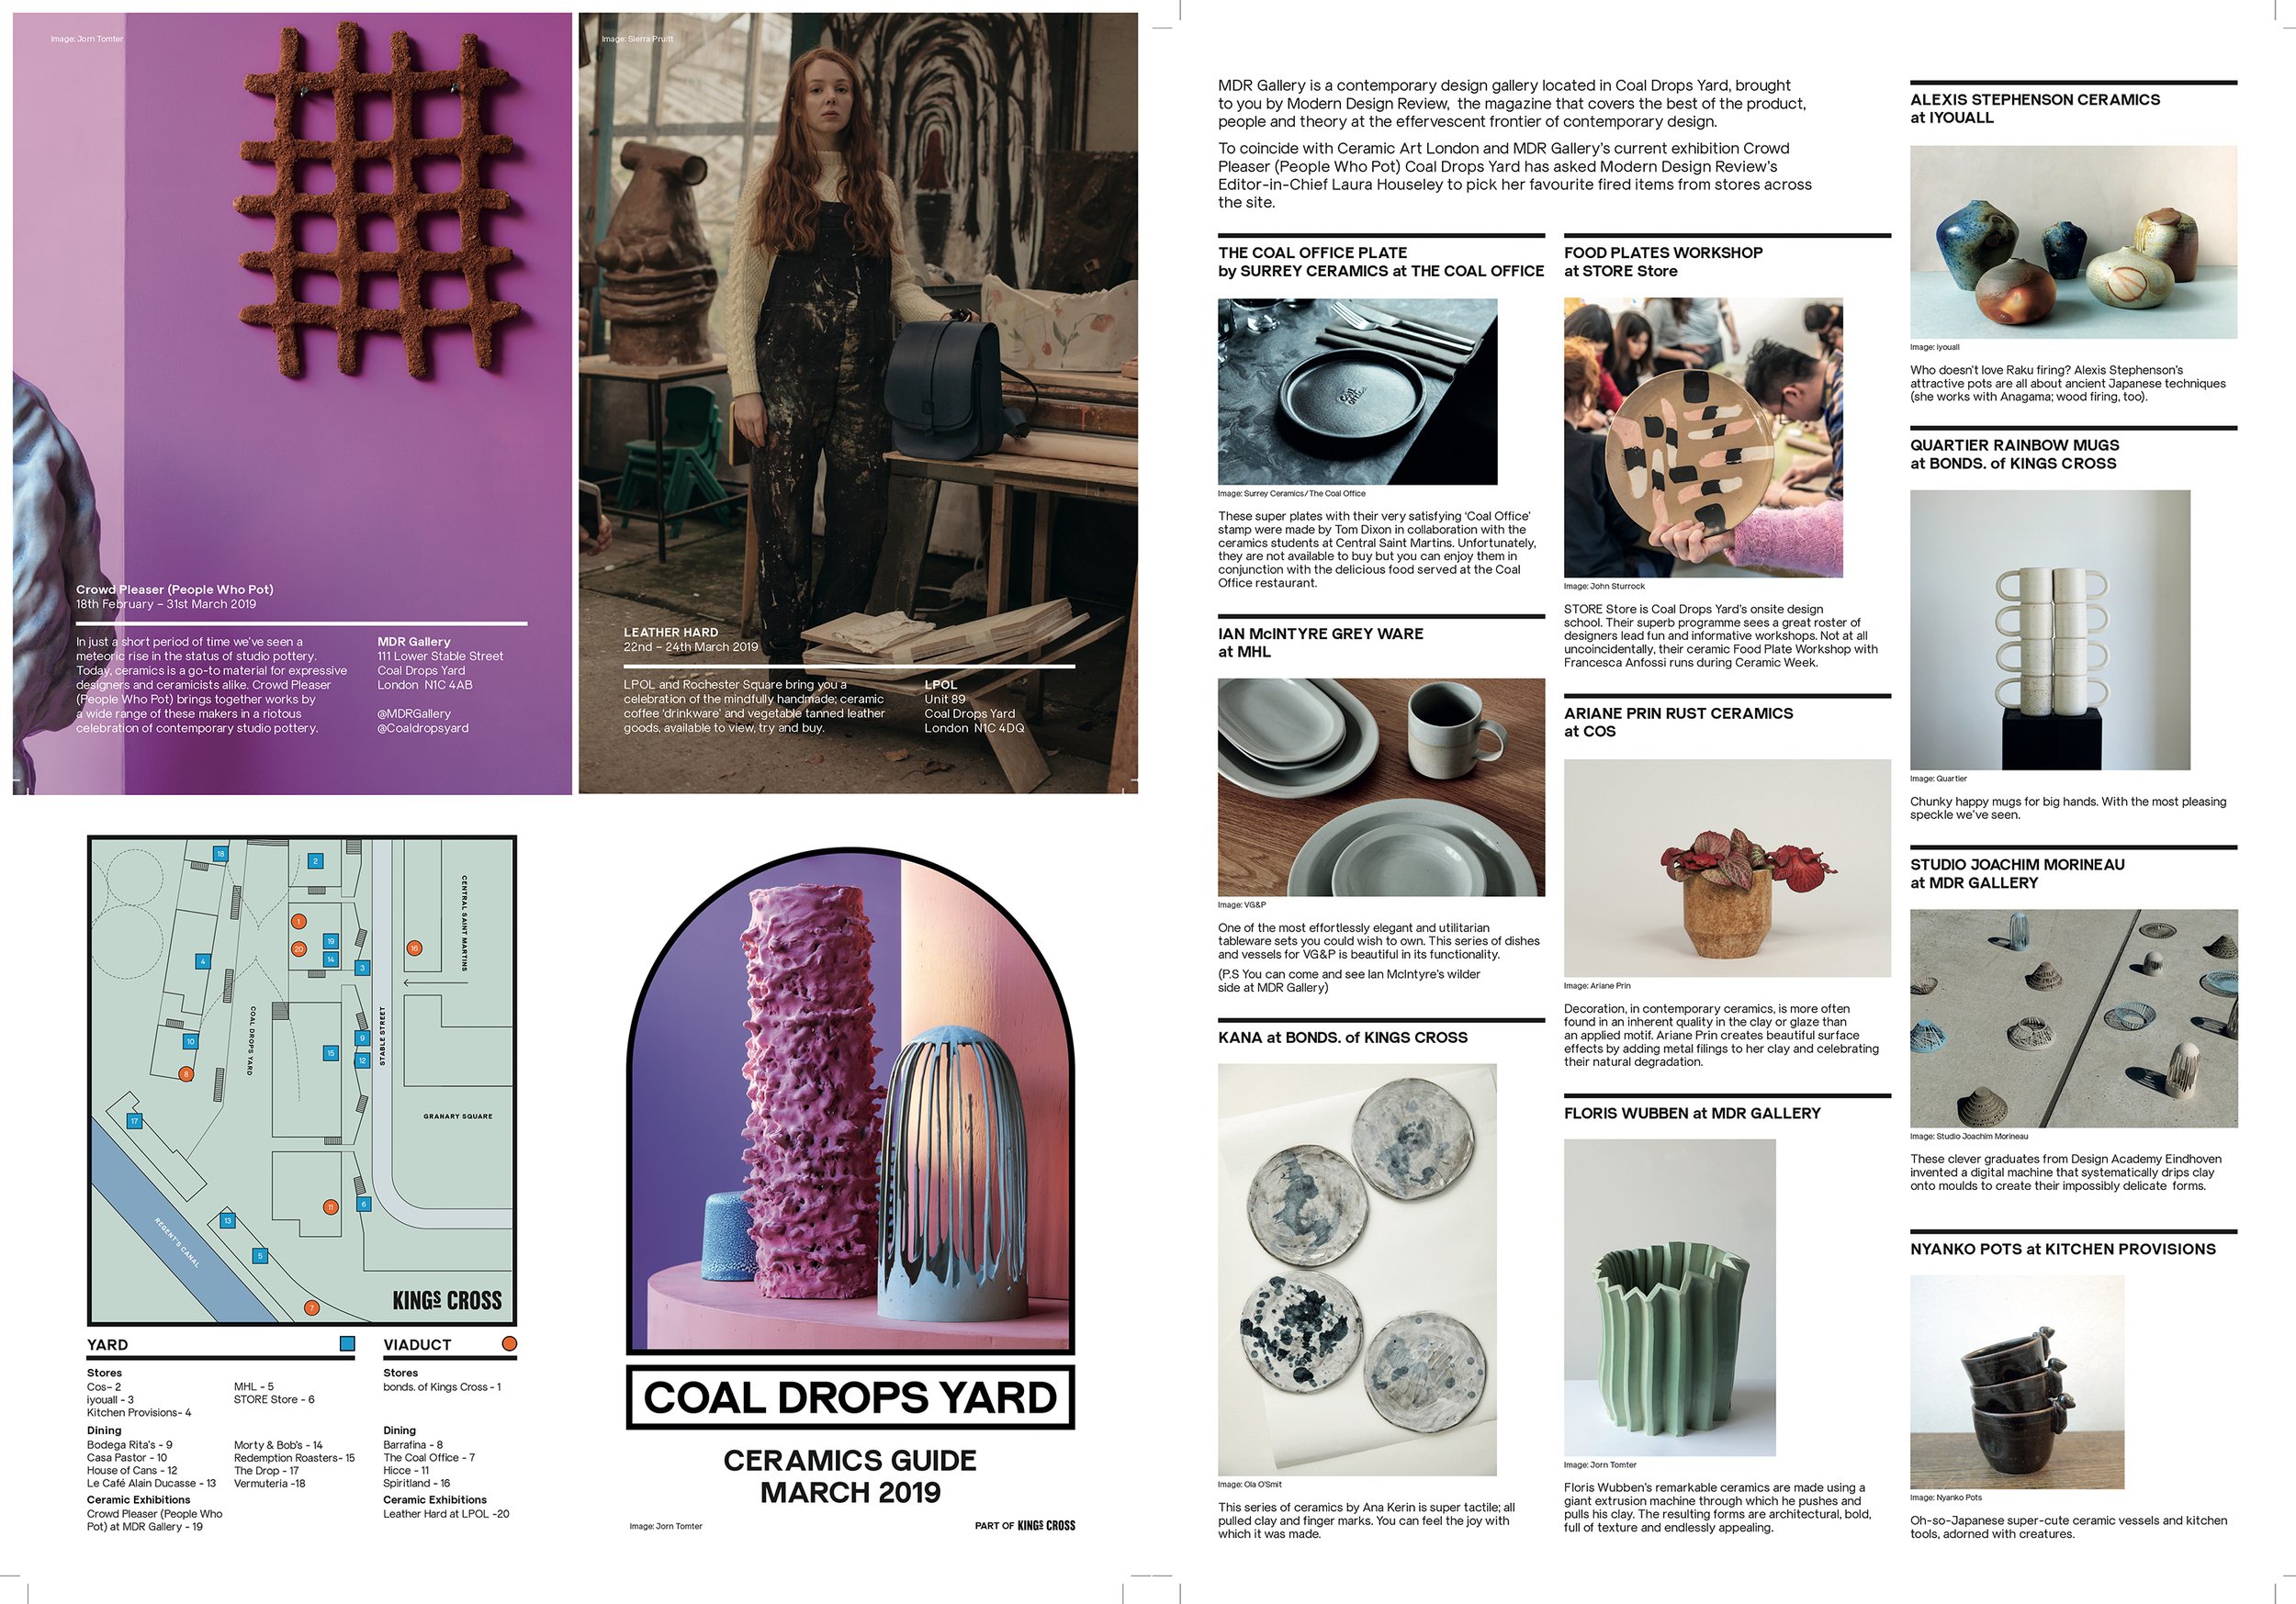 Coal Drops Yard Ceramics guide for Ceramic Art London and London Craft Week.